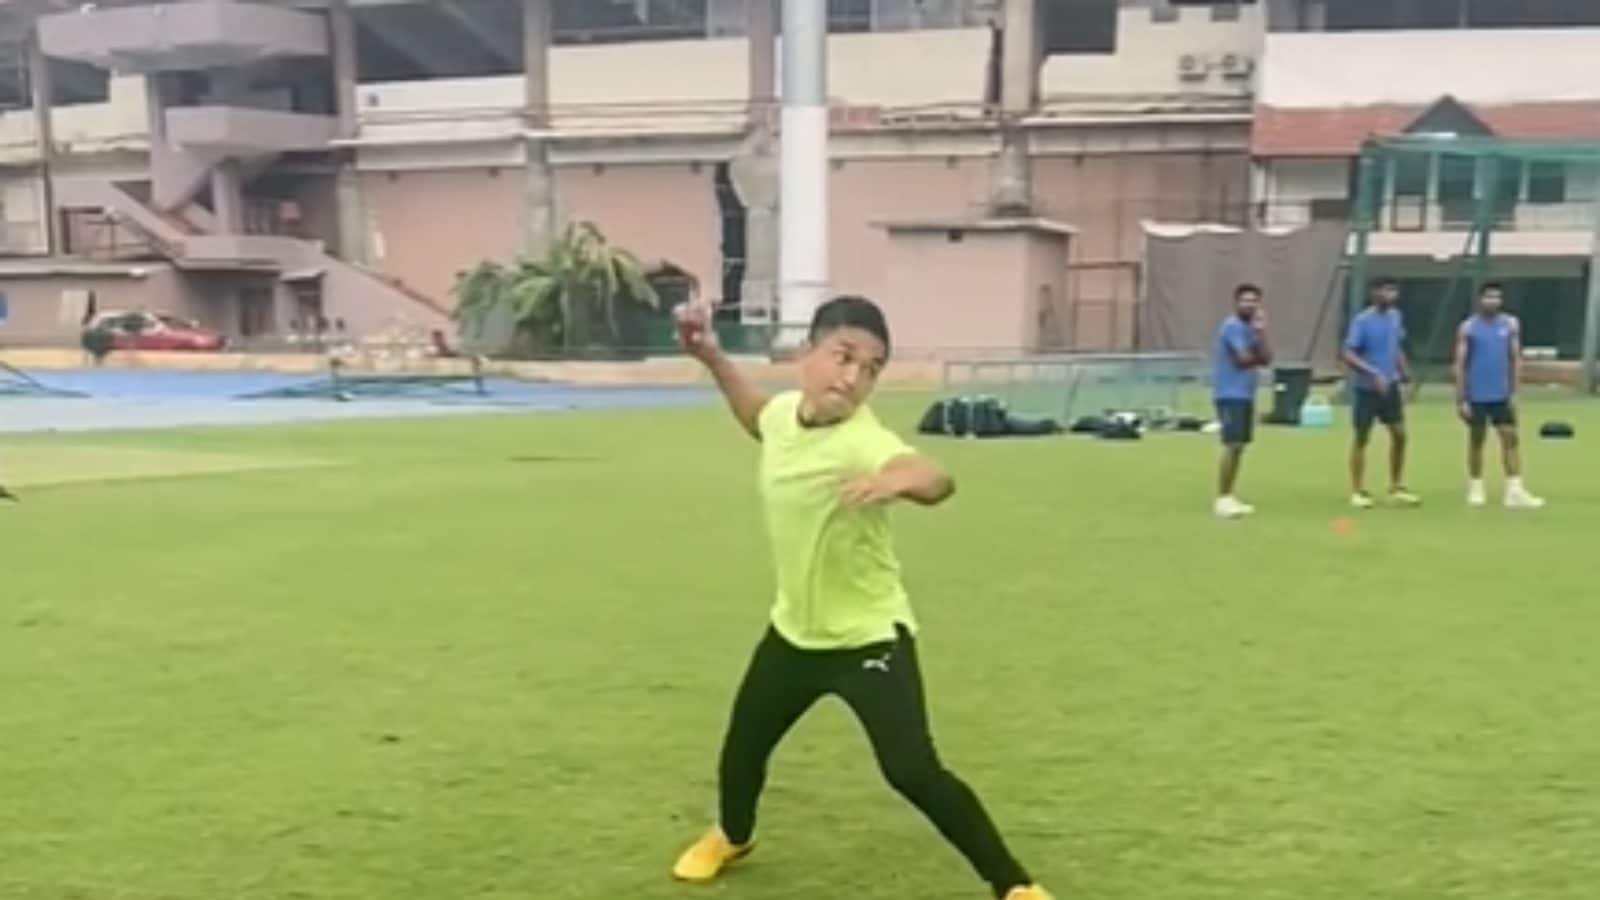 O capitão de futebol indiano Sunil Chhetri mostra suas habilidades em campo enquanto participa de uma sessão de treinos na NCA